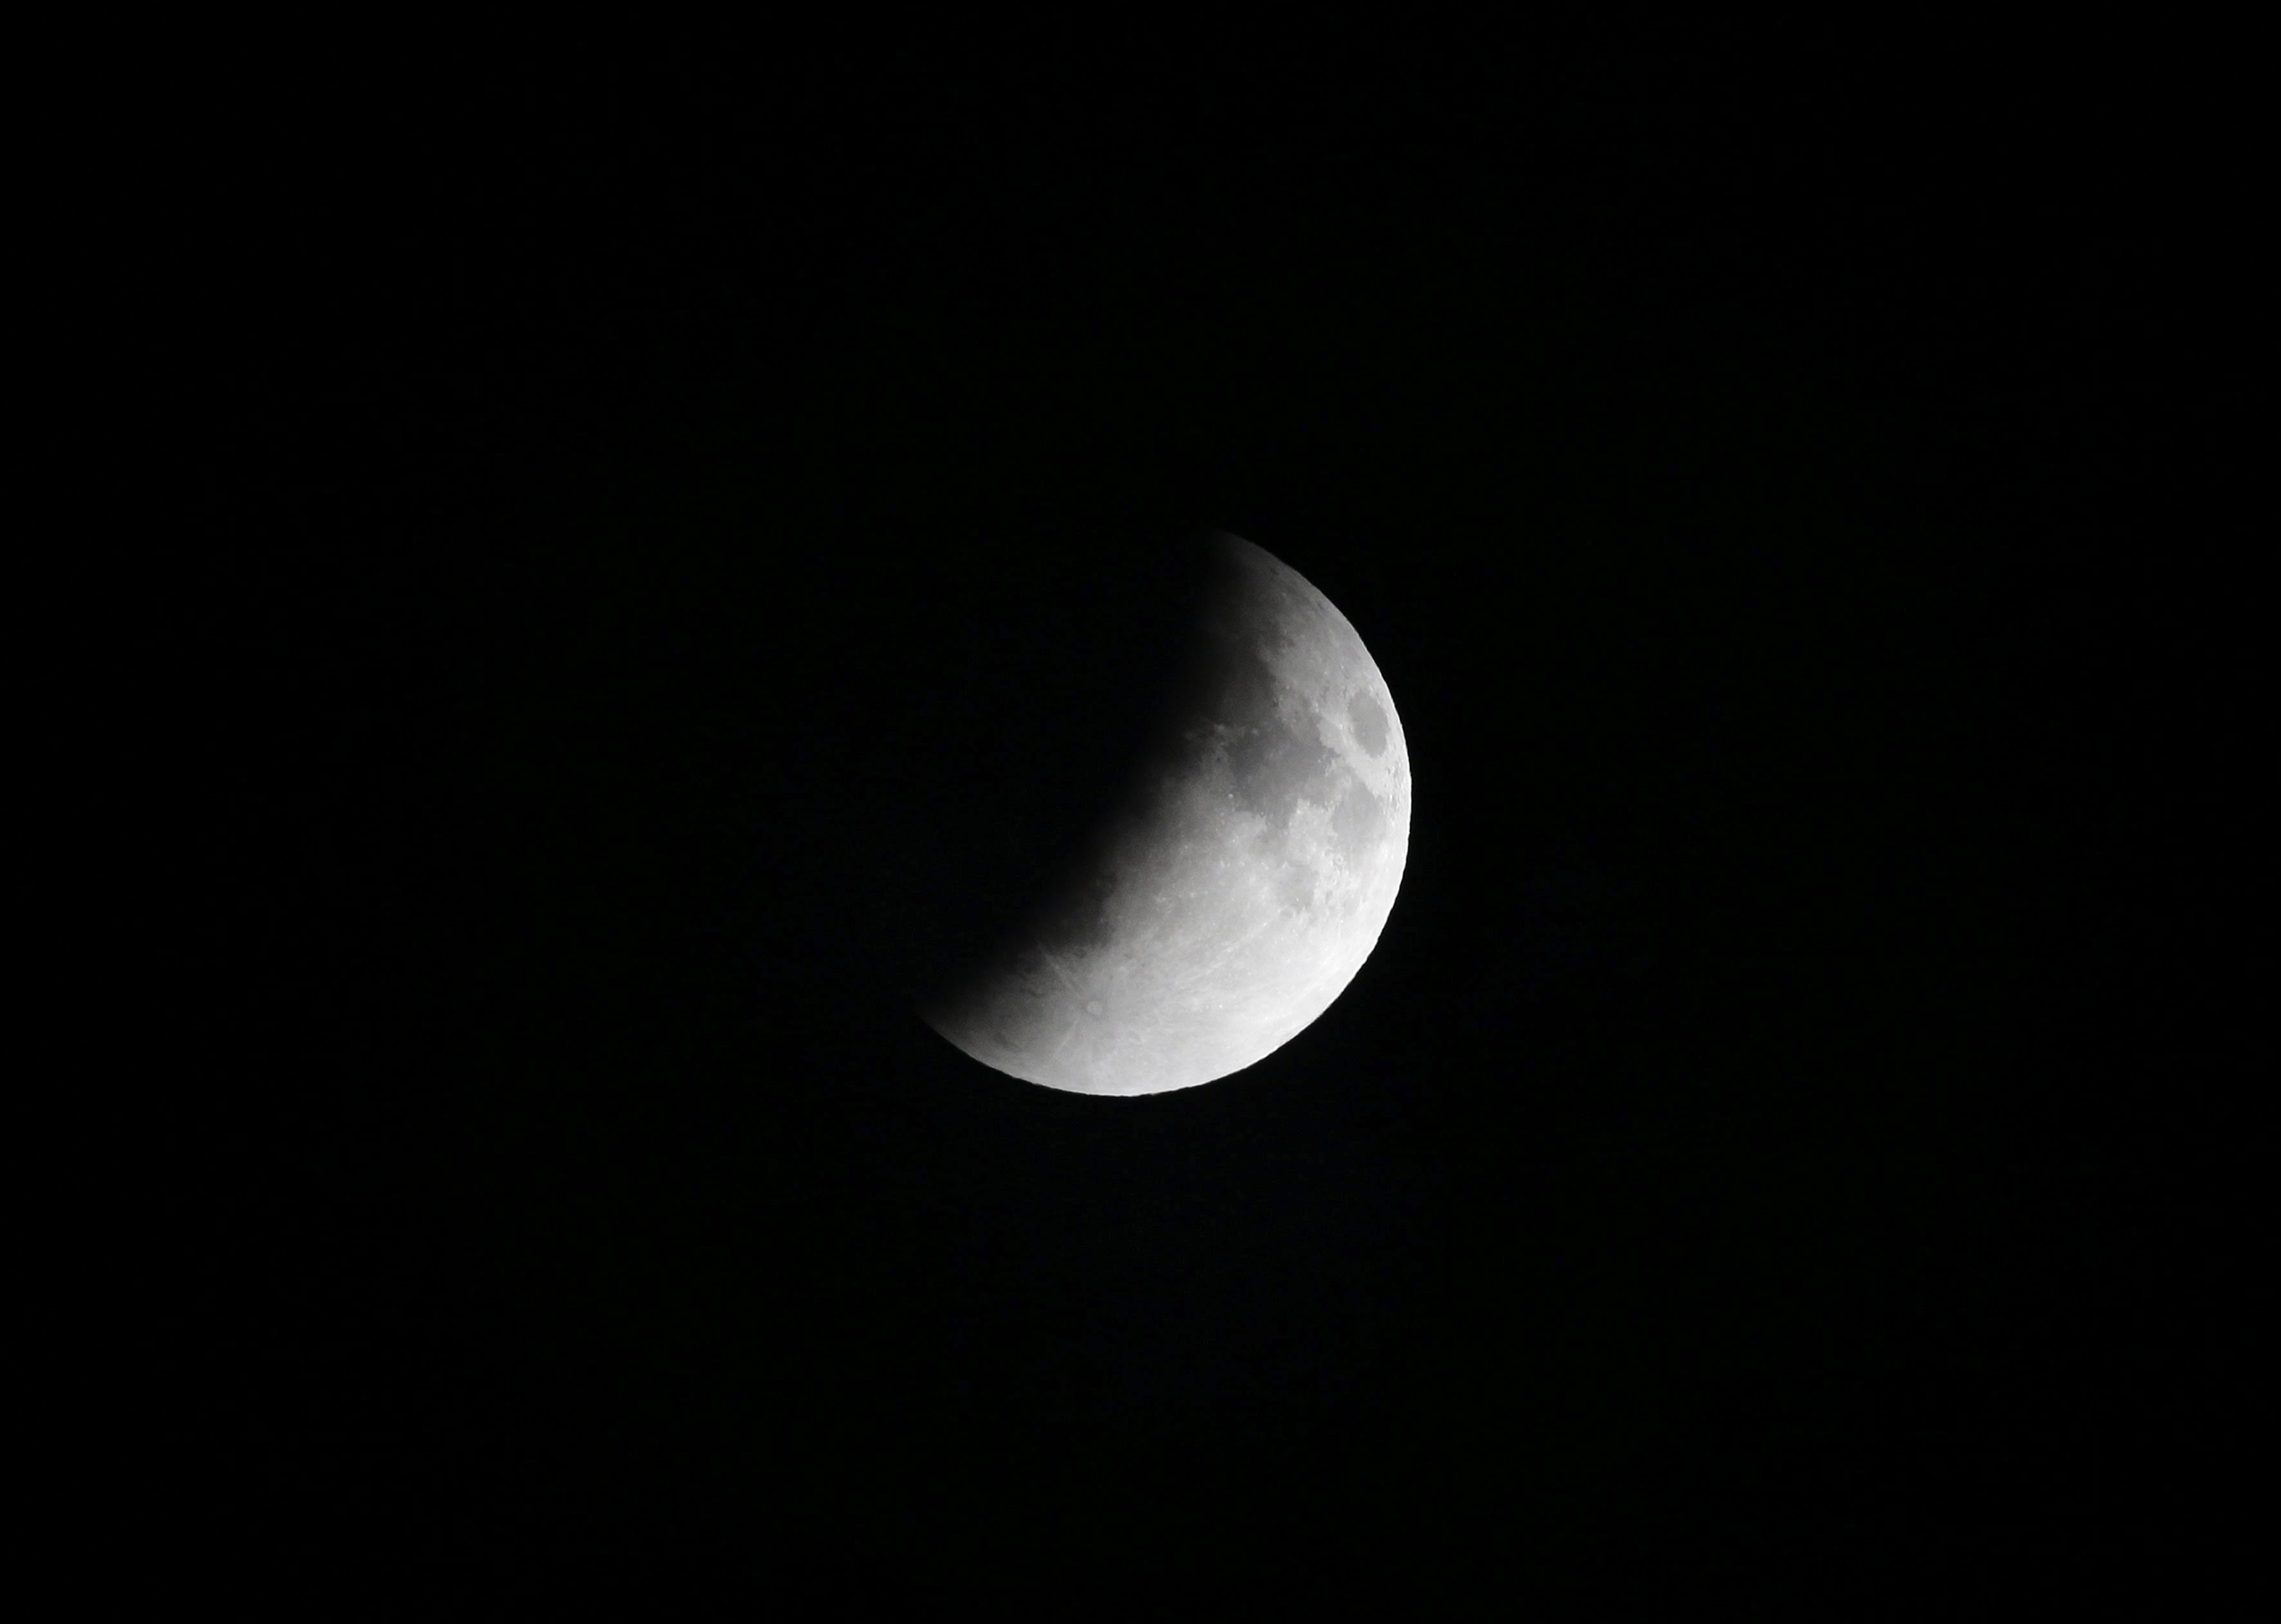 El eclipse lunar que se vio en las Américas duró una hora y 18 minutos